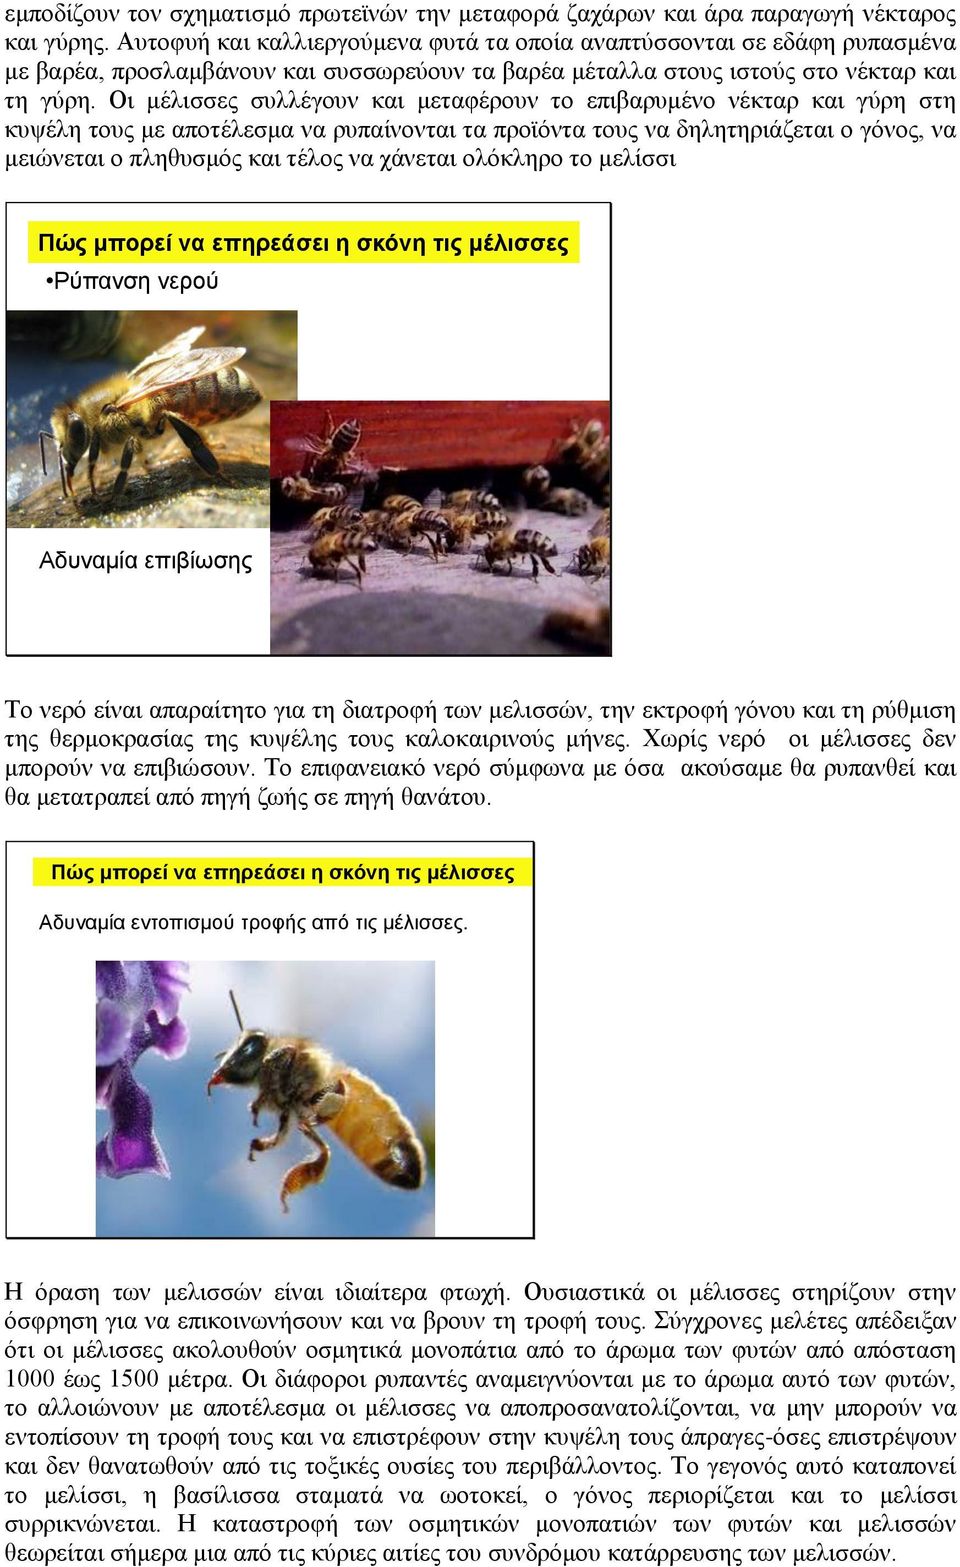 Οι μέλισσες συλλέγουν και μεταφέρουν το επιβαρυμένο νέκταρ και γύρη στη κυψέλη τους με αποτέλεσμα να ρυπαίνονται τα προϊόντα τους να δηλητηριάζεται ο γόνος, να μειώνεται ο πληθυσμός και τέλος να